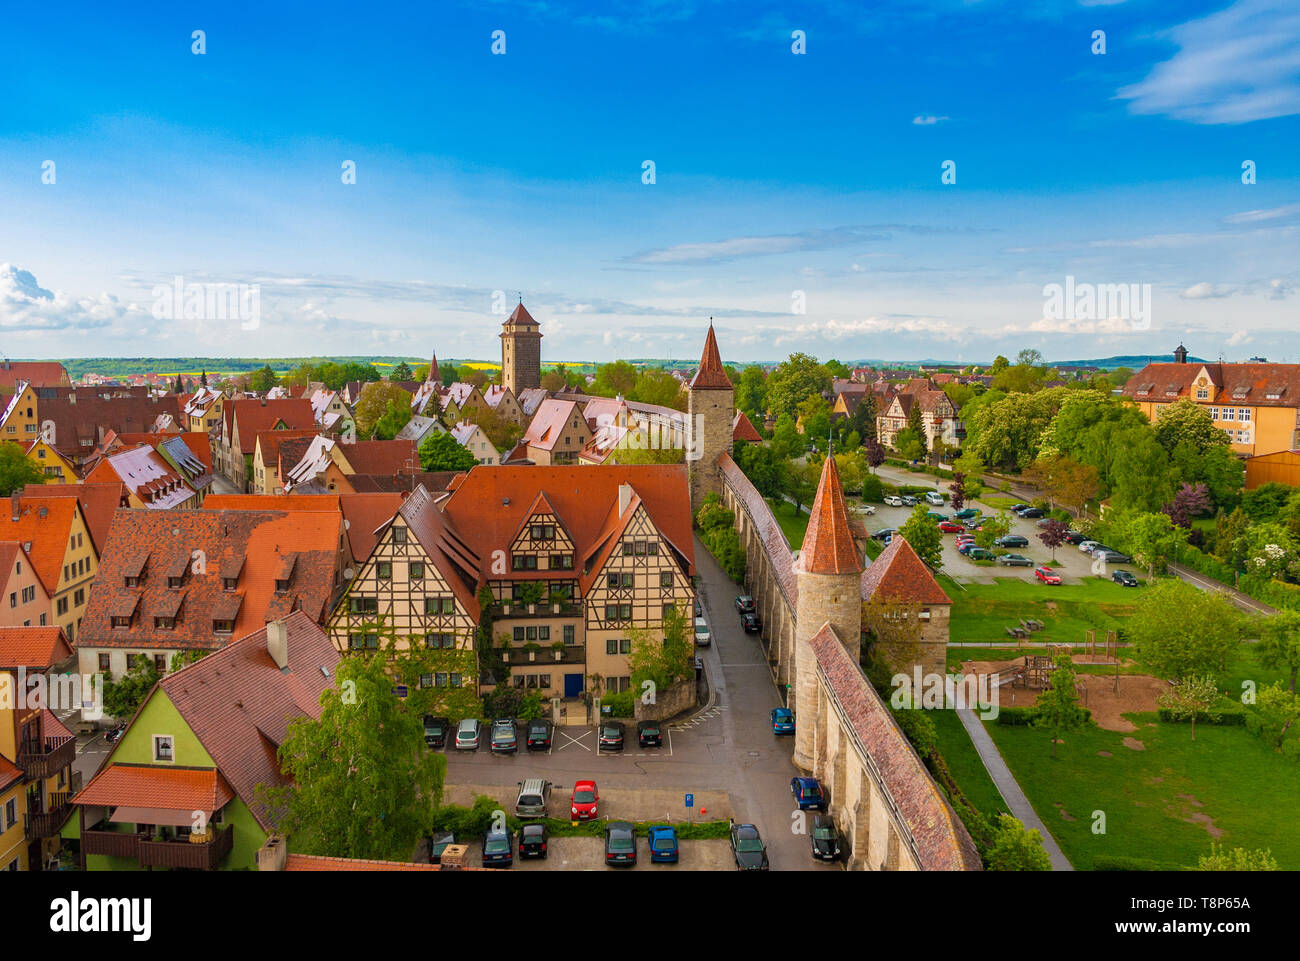 Schöne Antenne Panoramablick Rothenburg o.d. Tauber an einem schönen Tag mit blauem Himmel in Bayern, Deutschland. Die berühmten gut erhaltenen mittelalterlichen Altstadt... Stockfoto